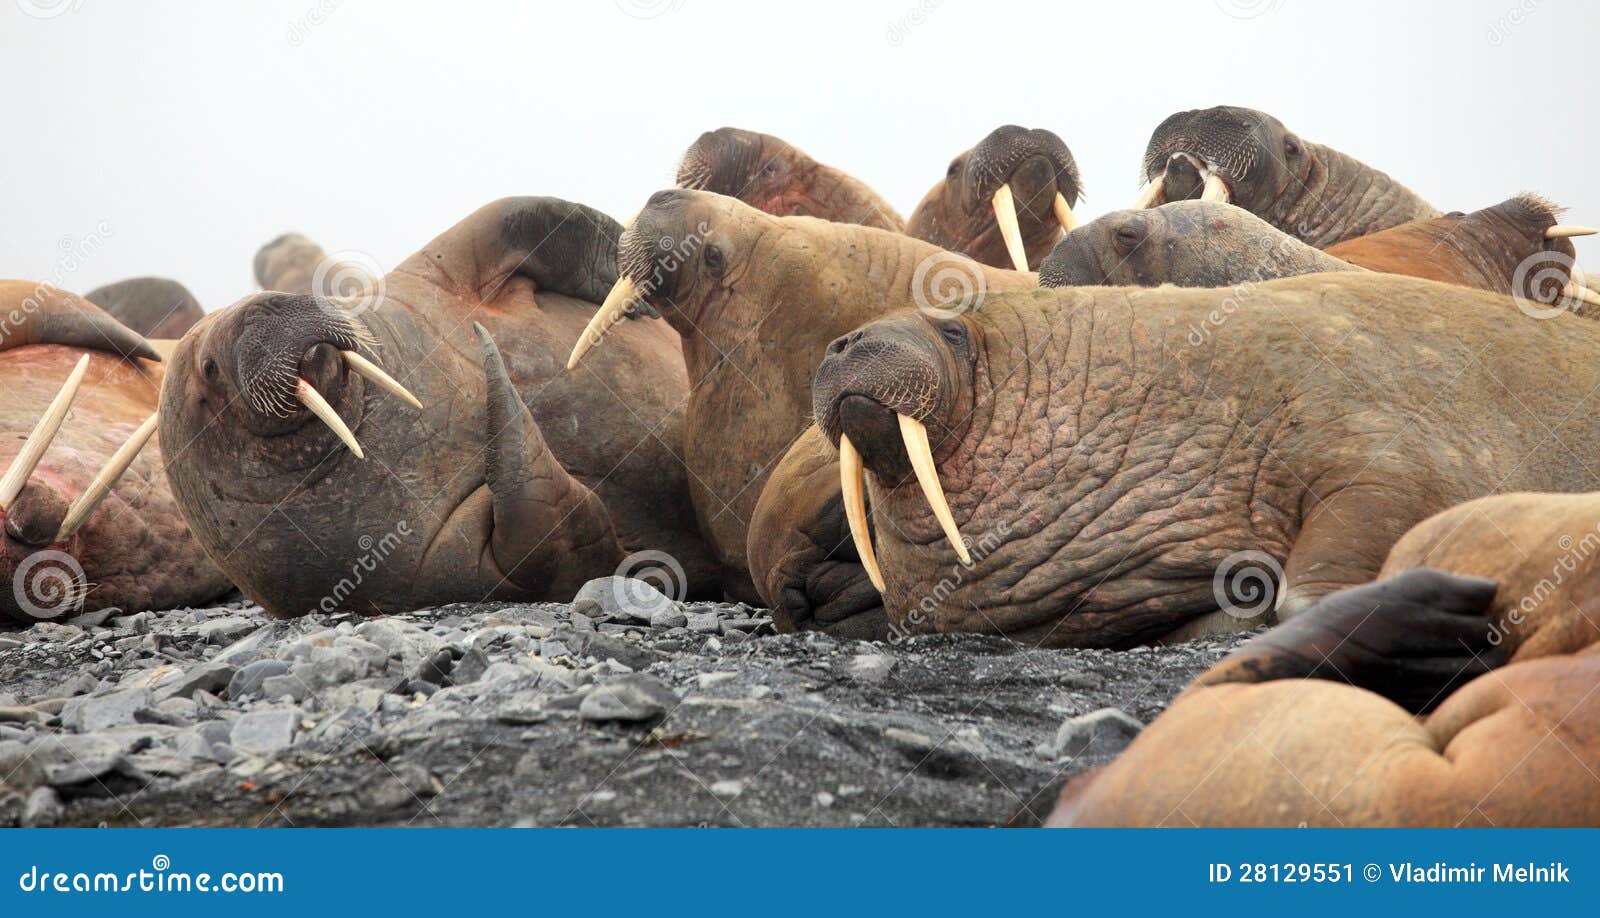 walrus rookery